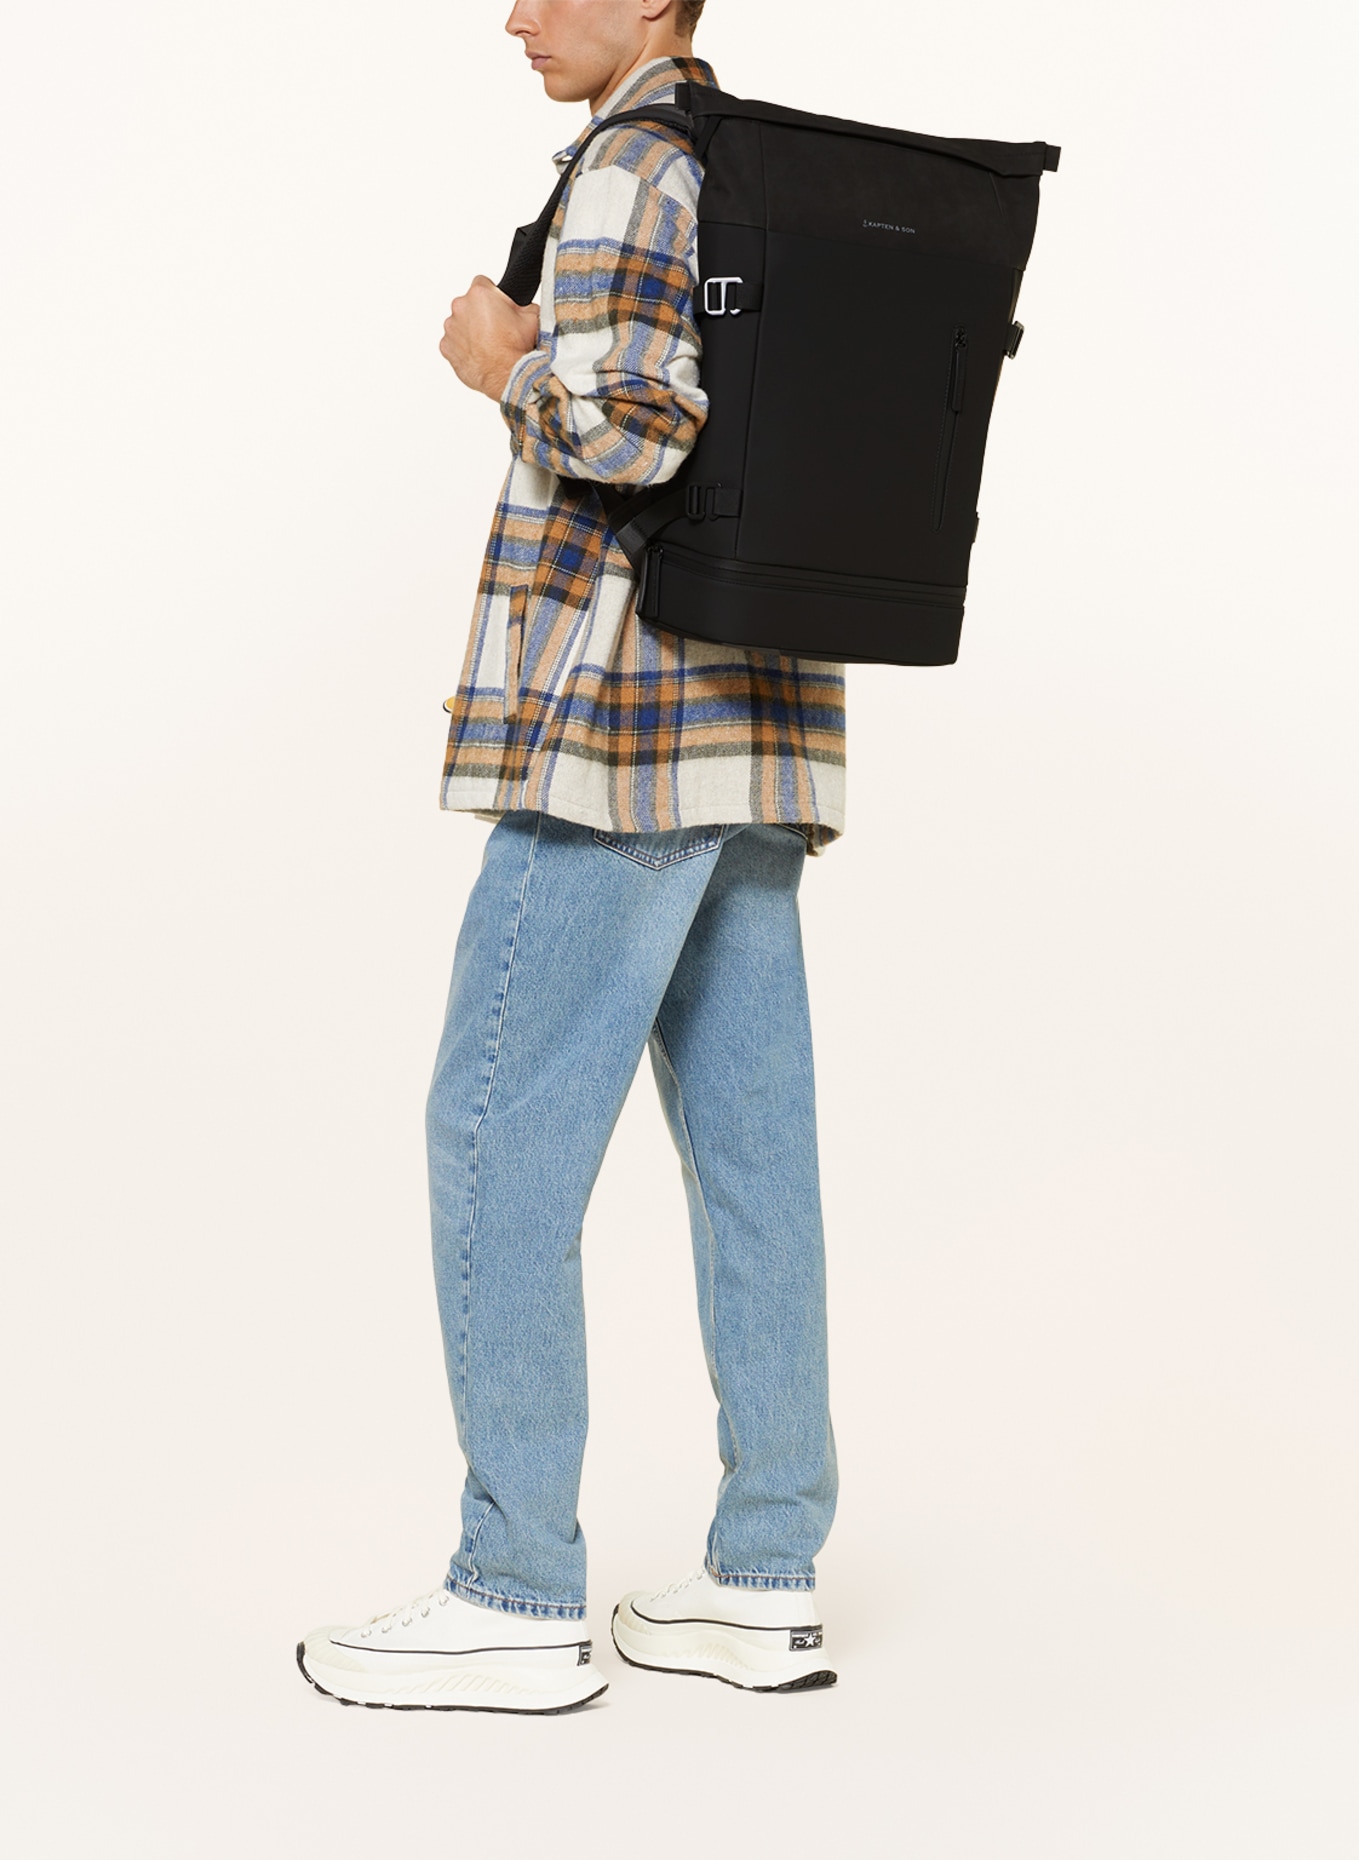 KAPTEN & SON Backpack HELSINKI 26 l with laptop compartment, Color: BLACK (Image 4)